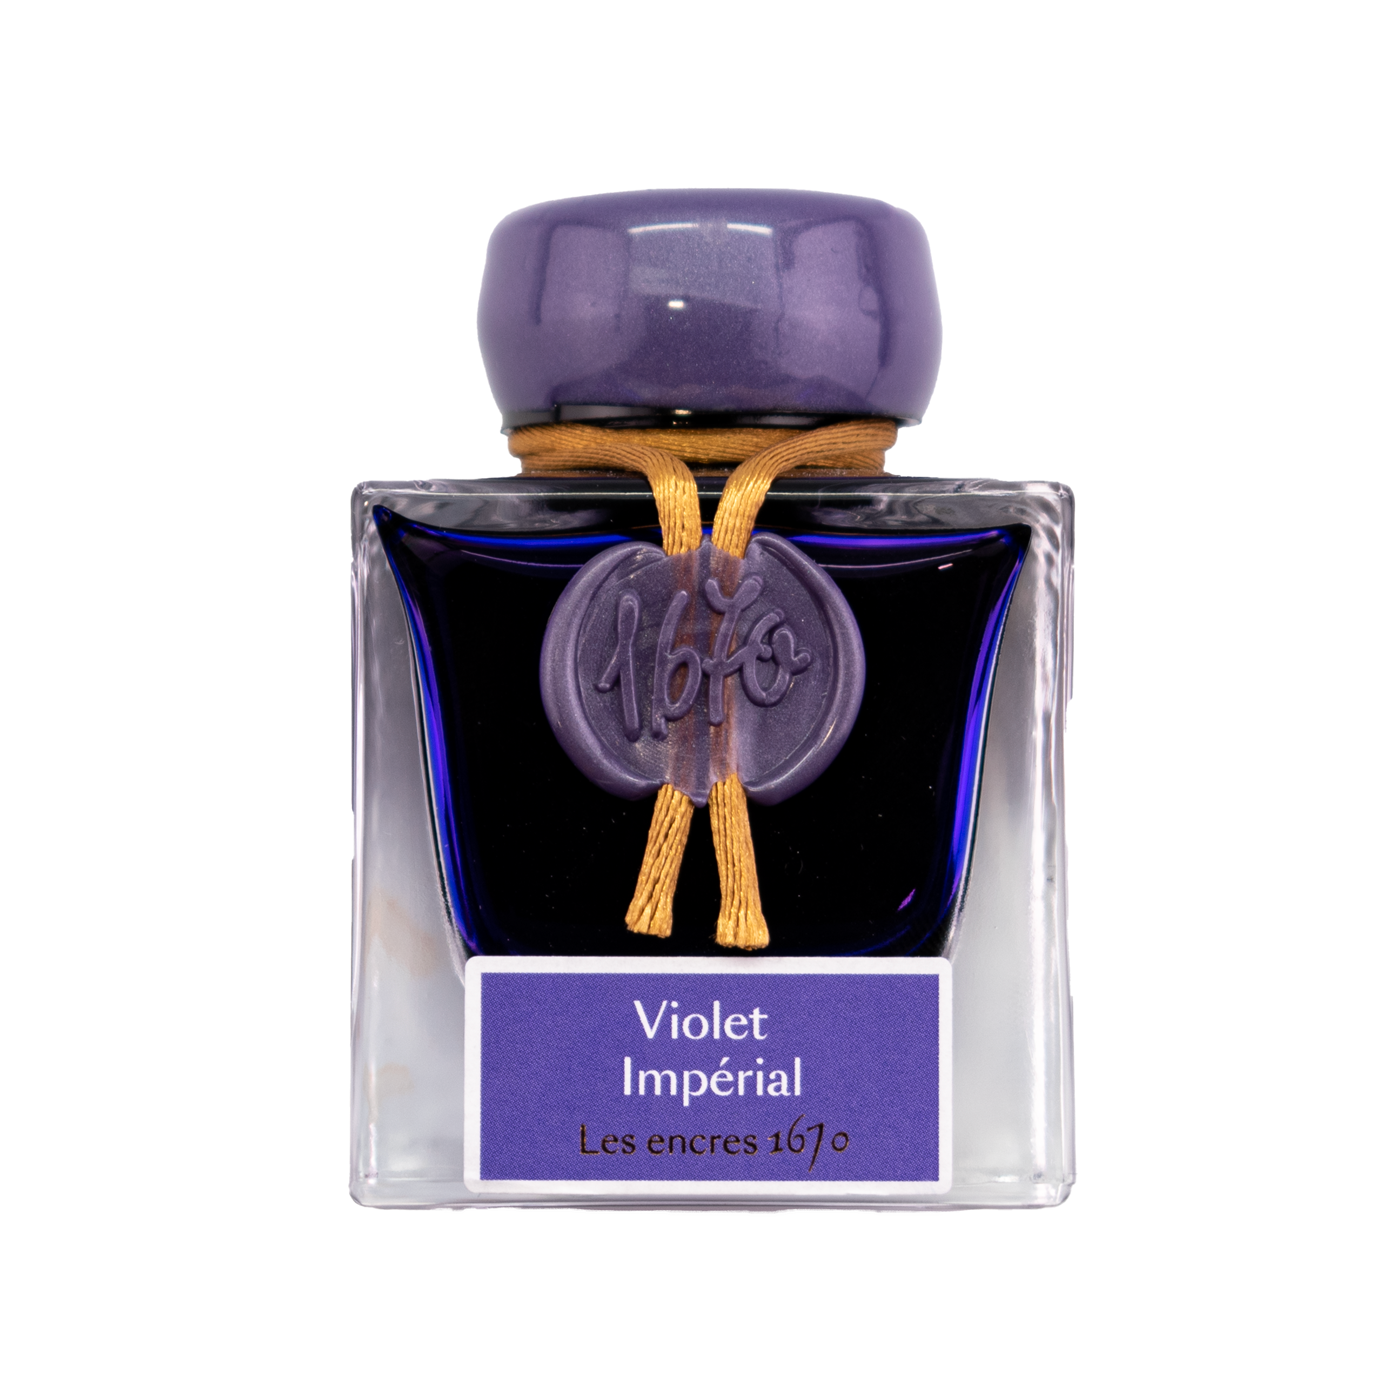 J Herbin 1670 Violet Imperial